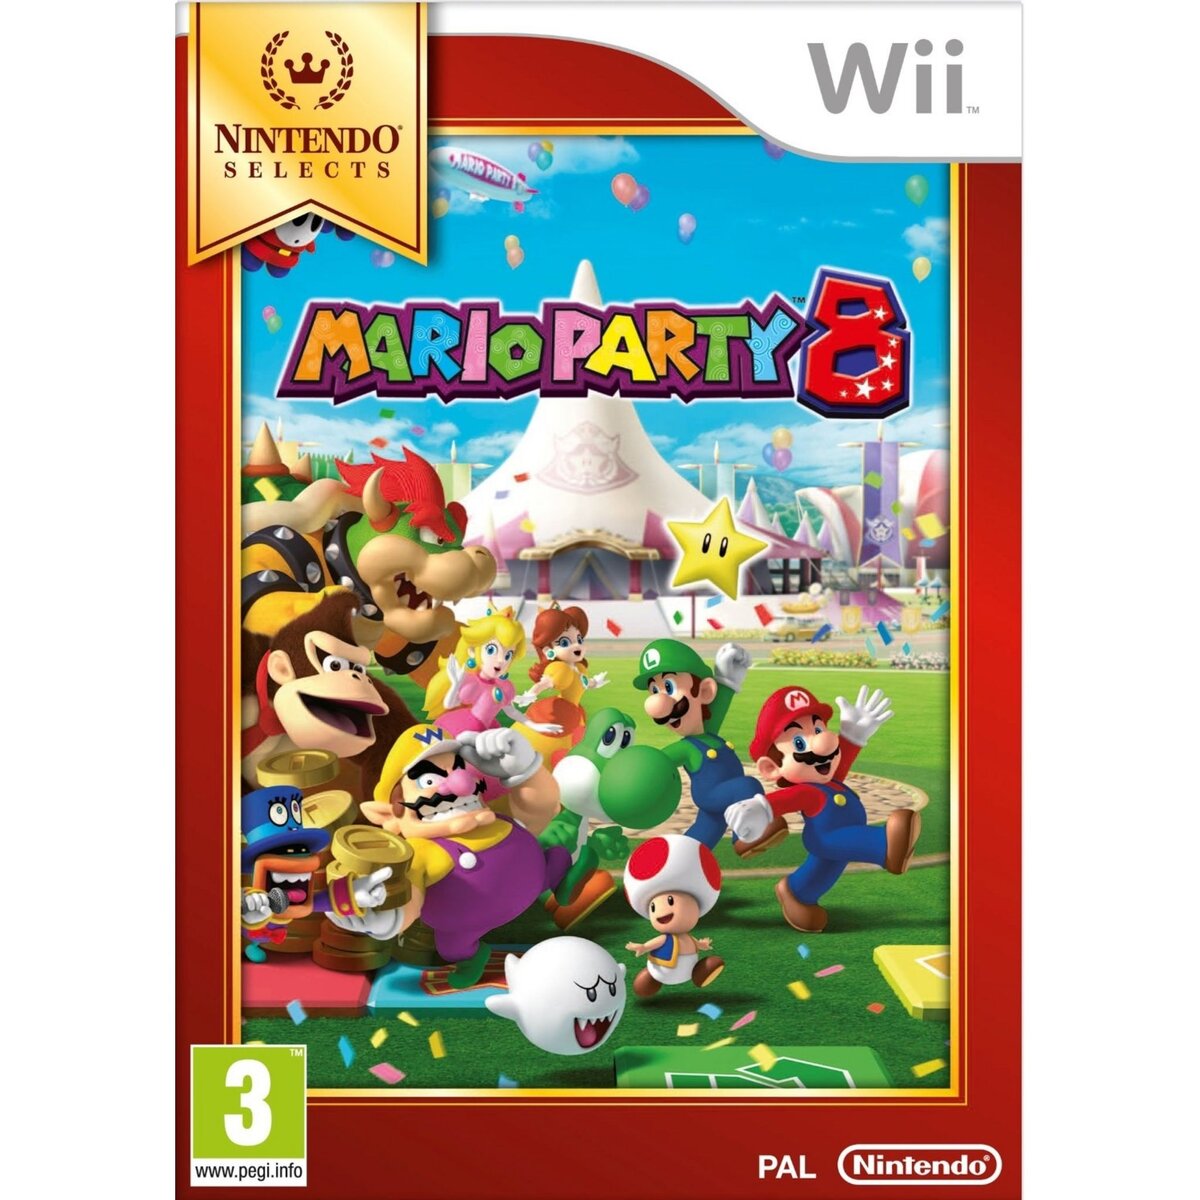 Mario Party 8